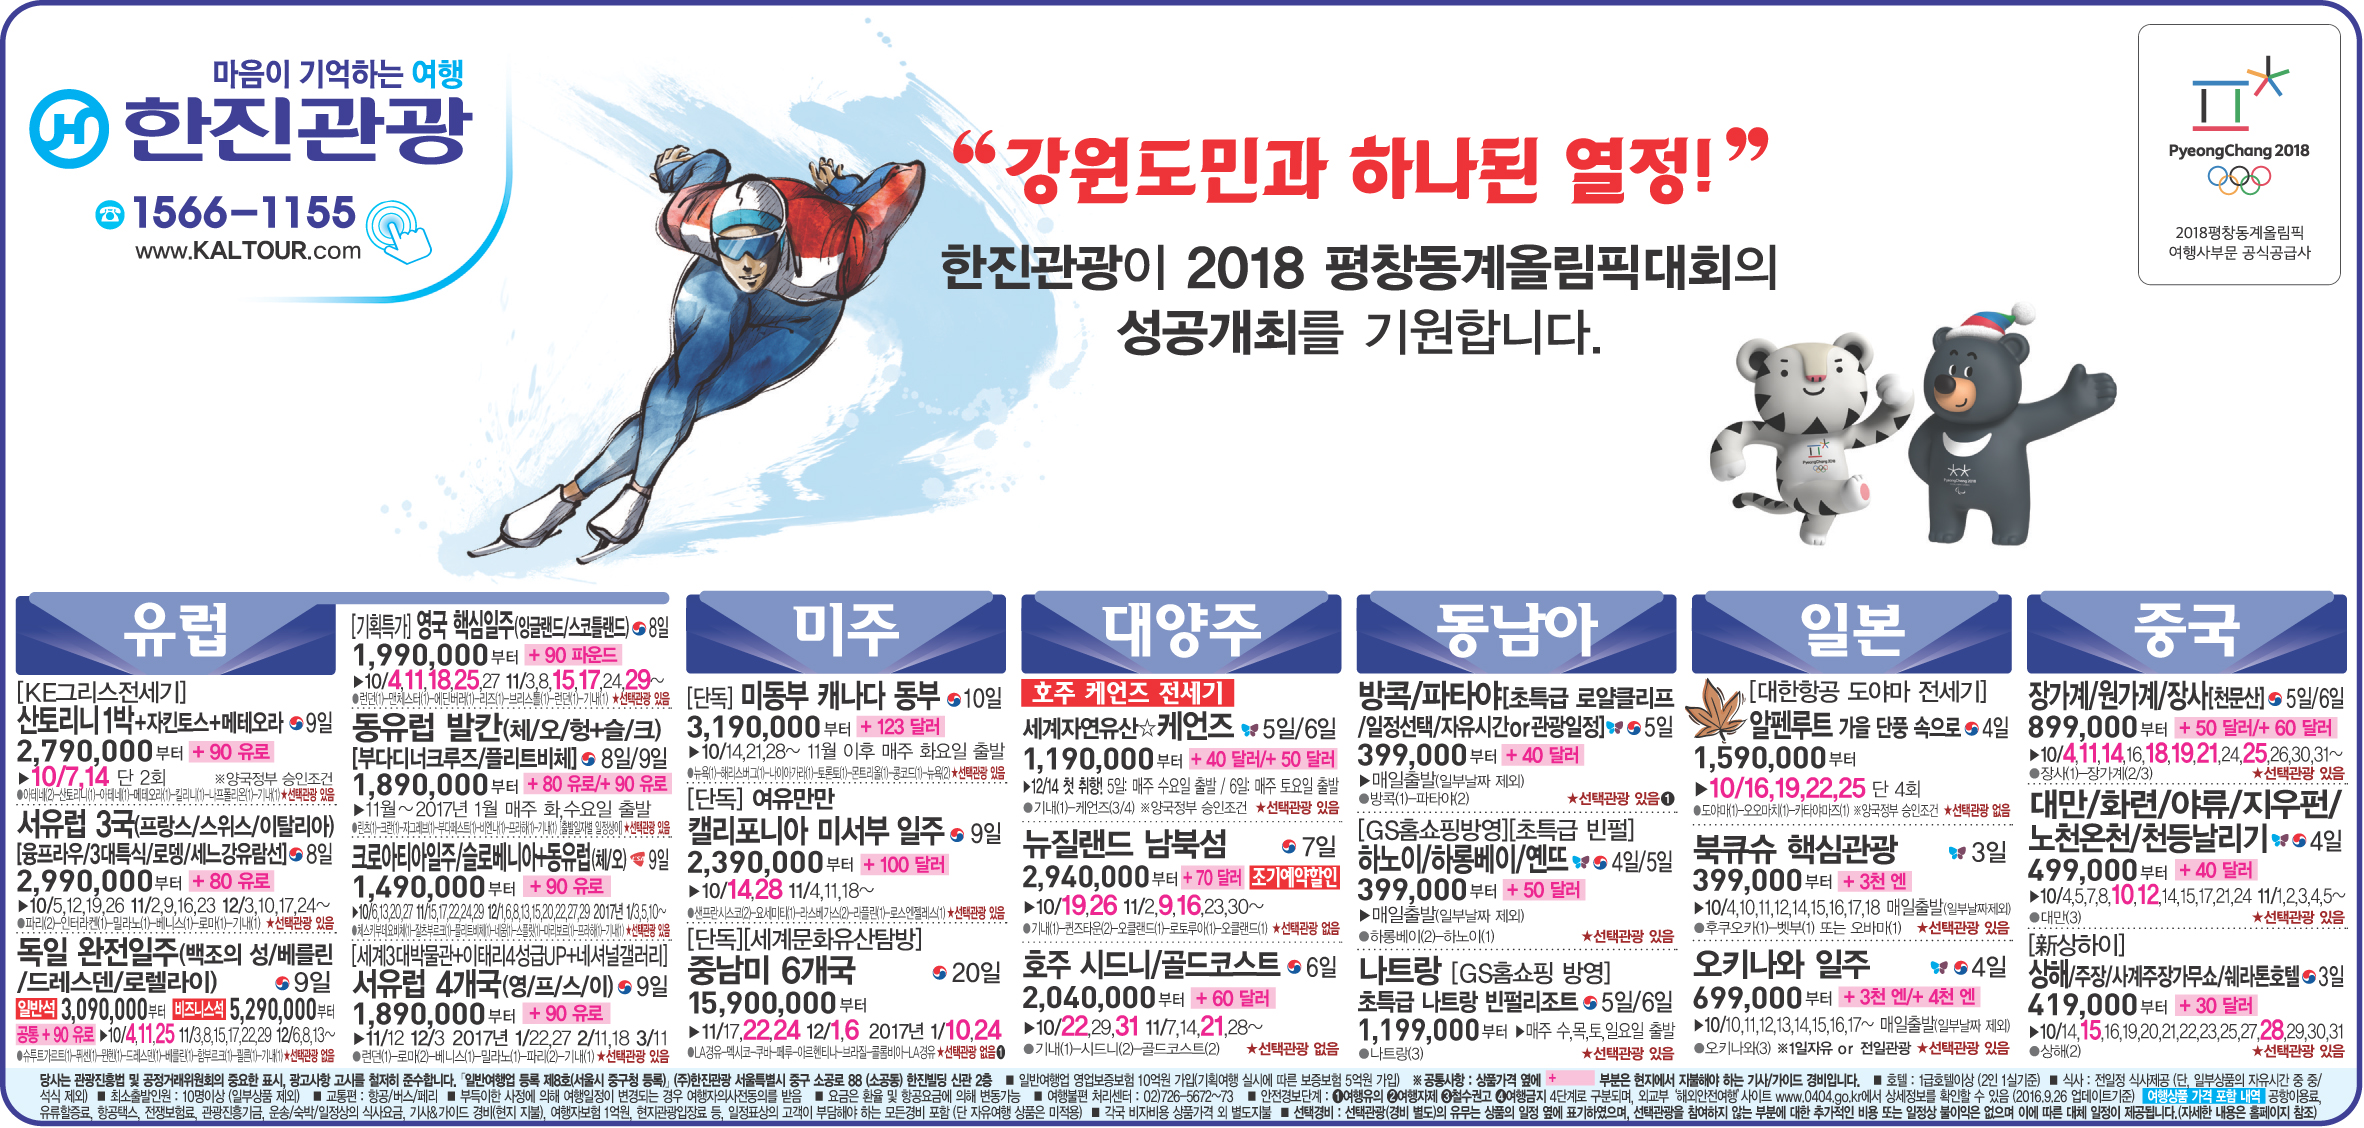 강원도민일보 [2016.09.27 화요일]